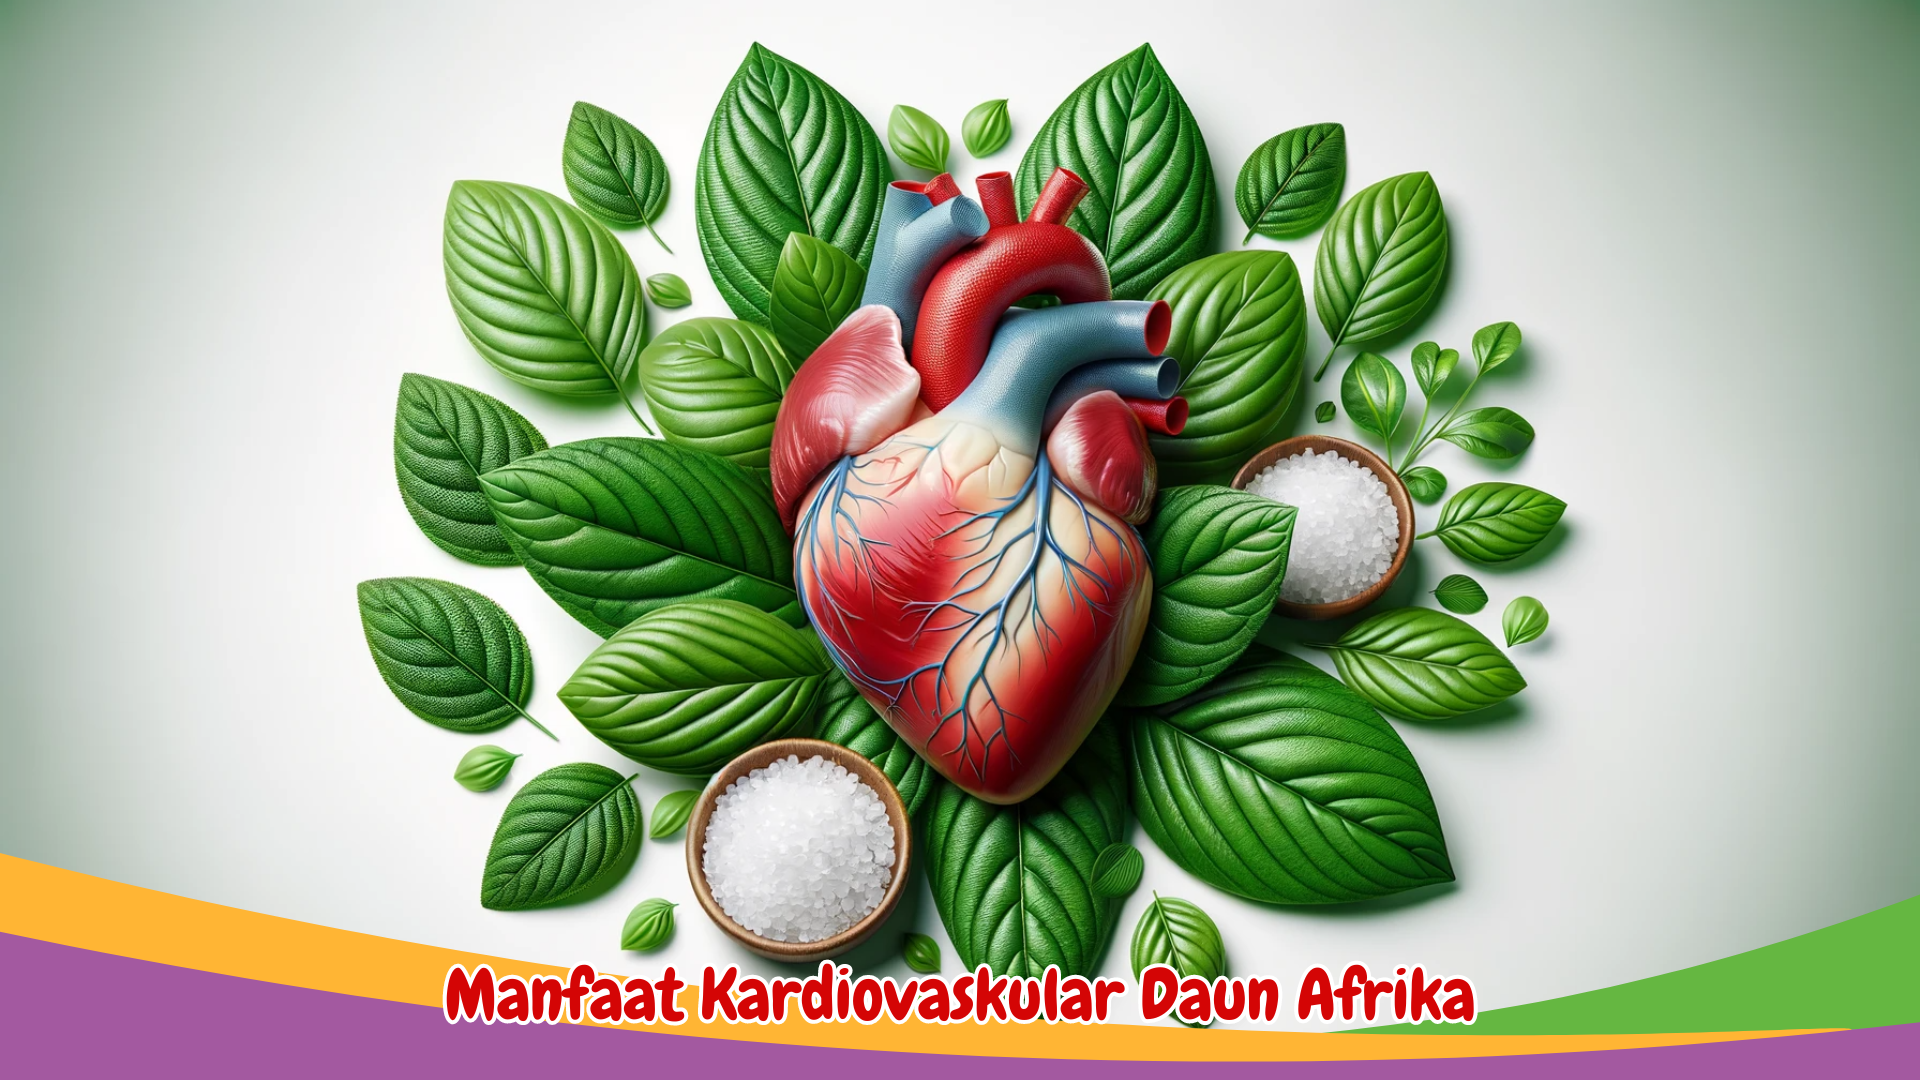 Manfaat Kardiovaskular Daun Afrika